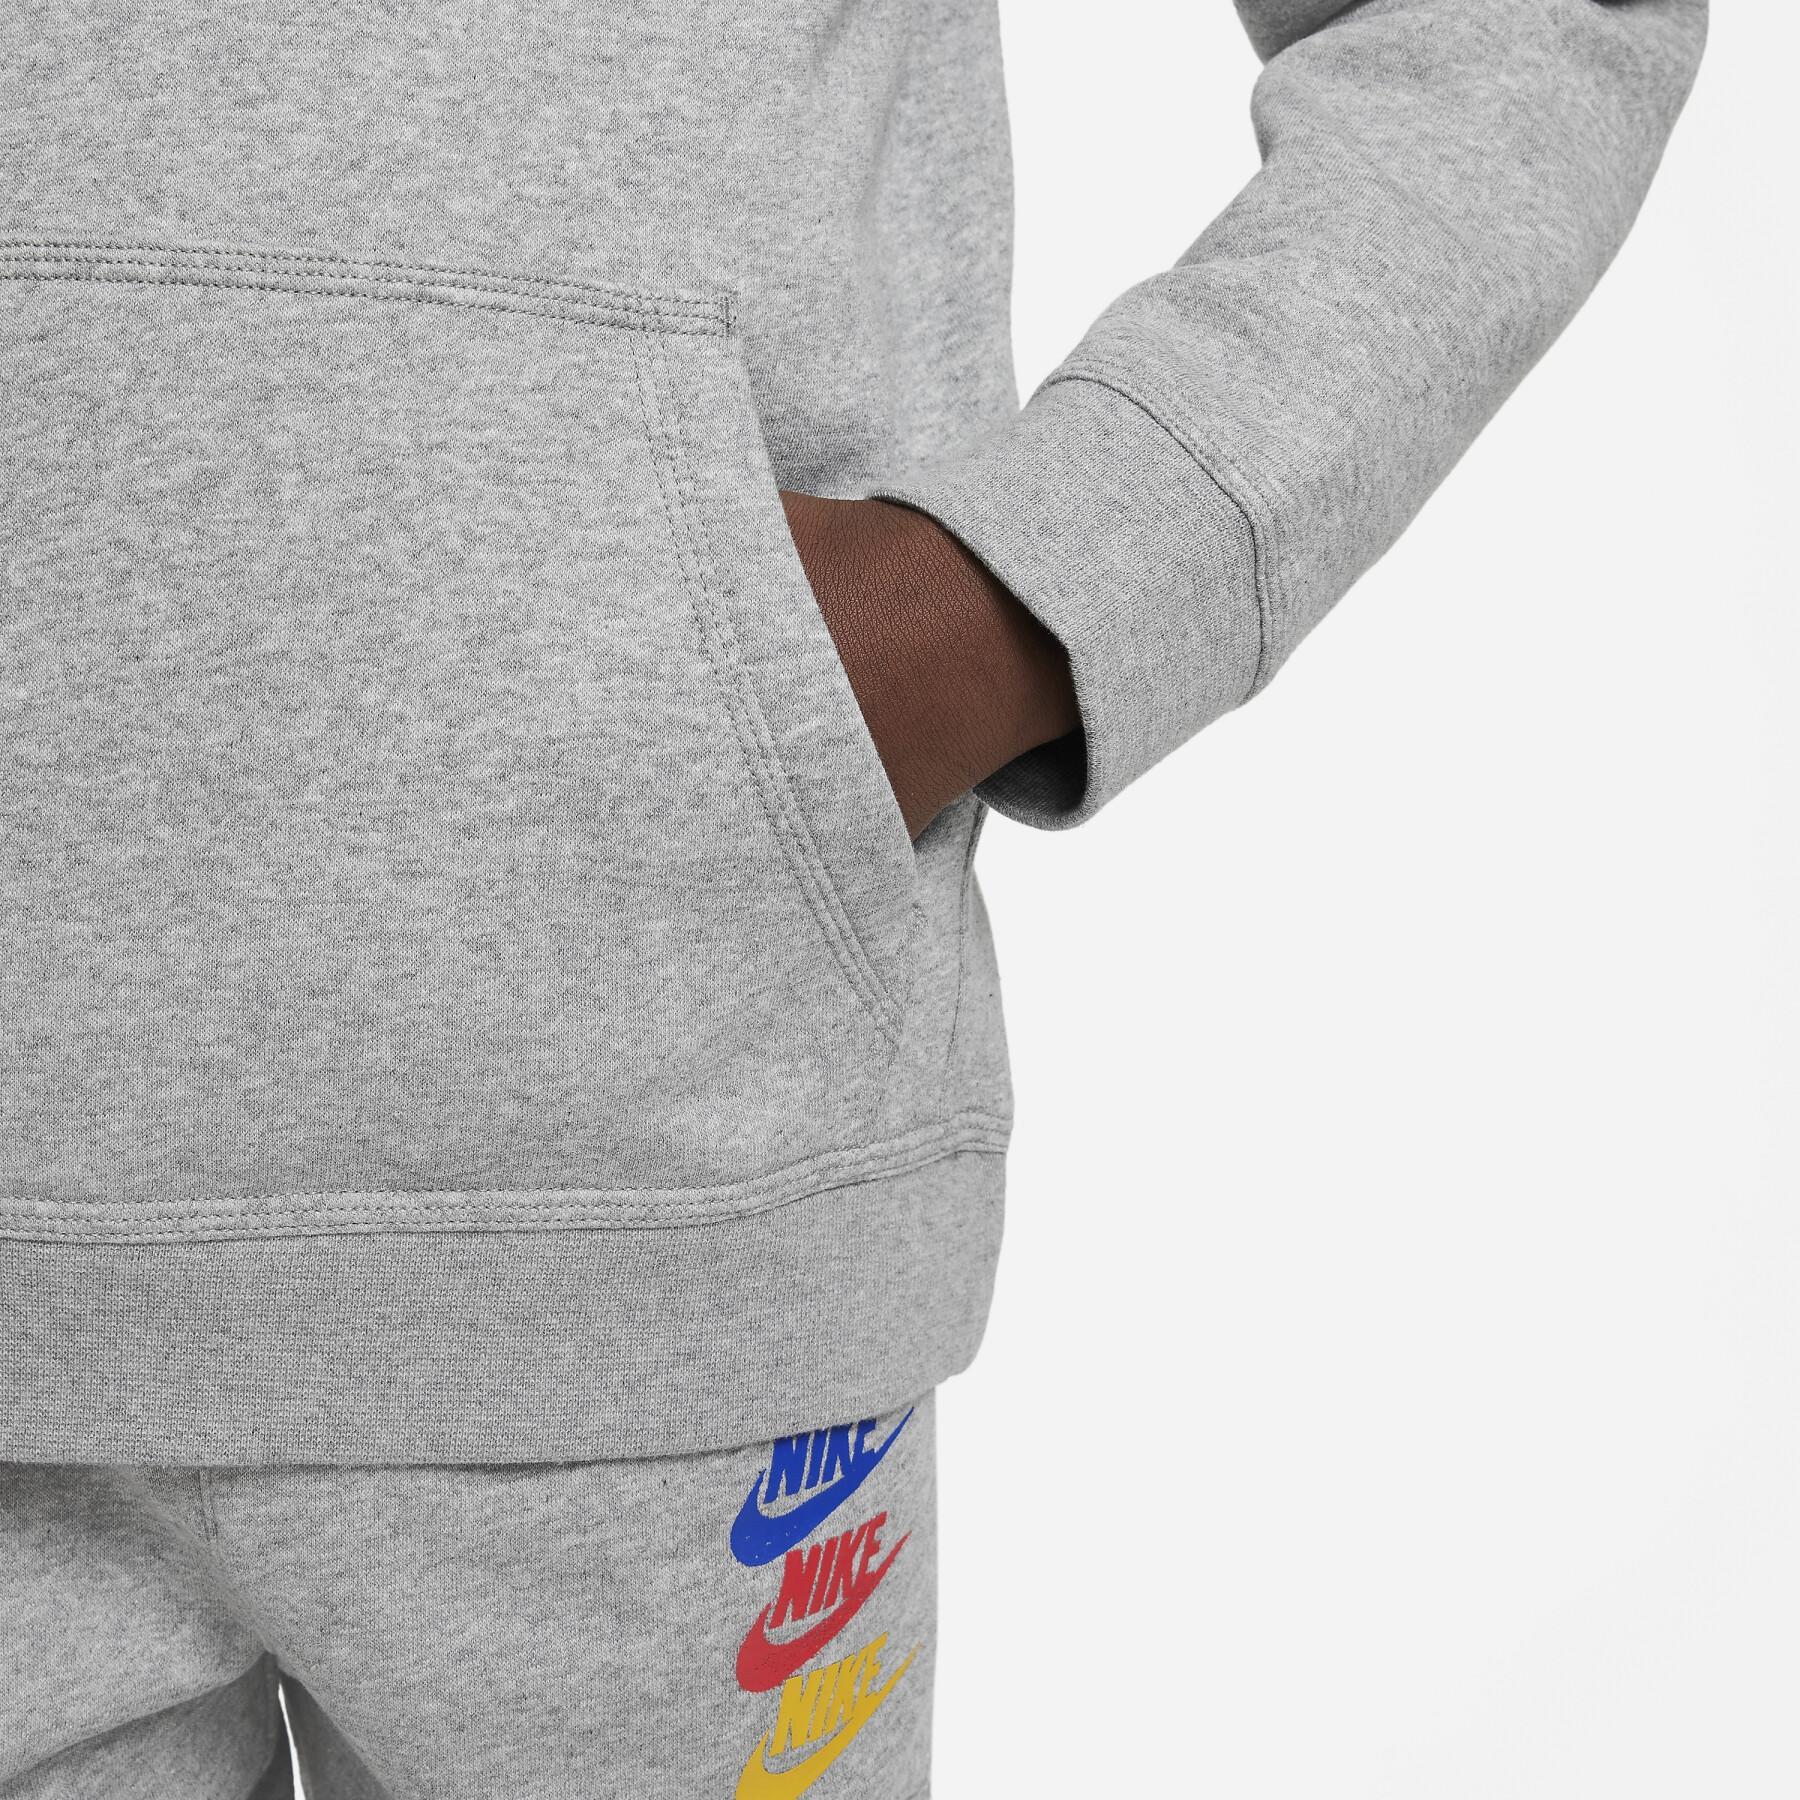 Sweatshirt felpa con cappuccio per bambini Nike Standard Issue Fleece PO BB